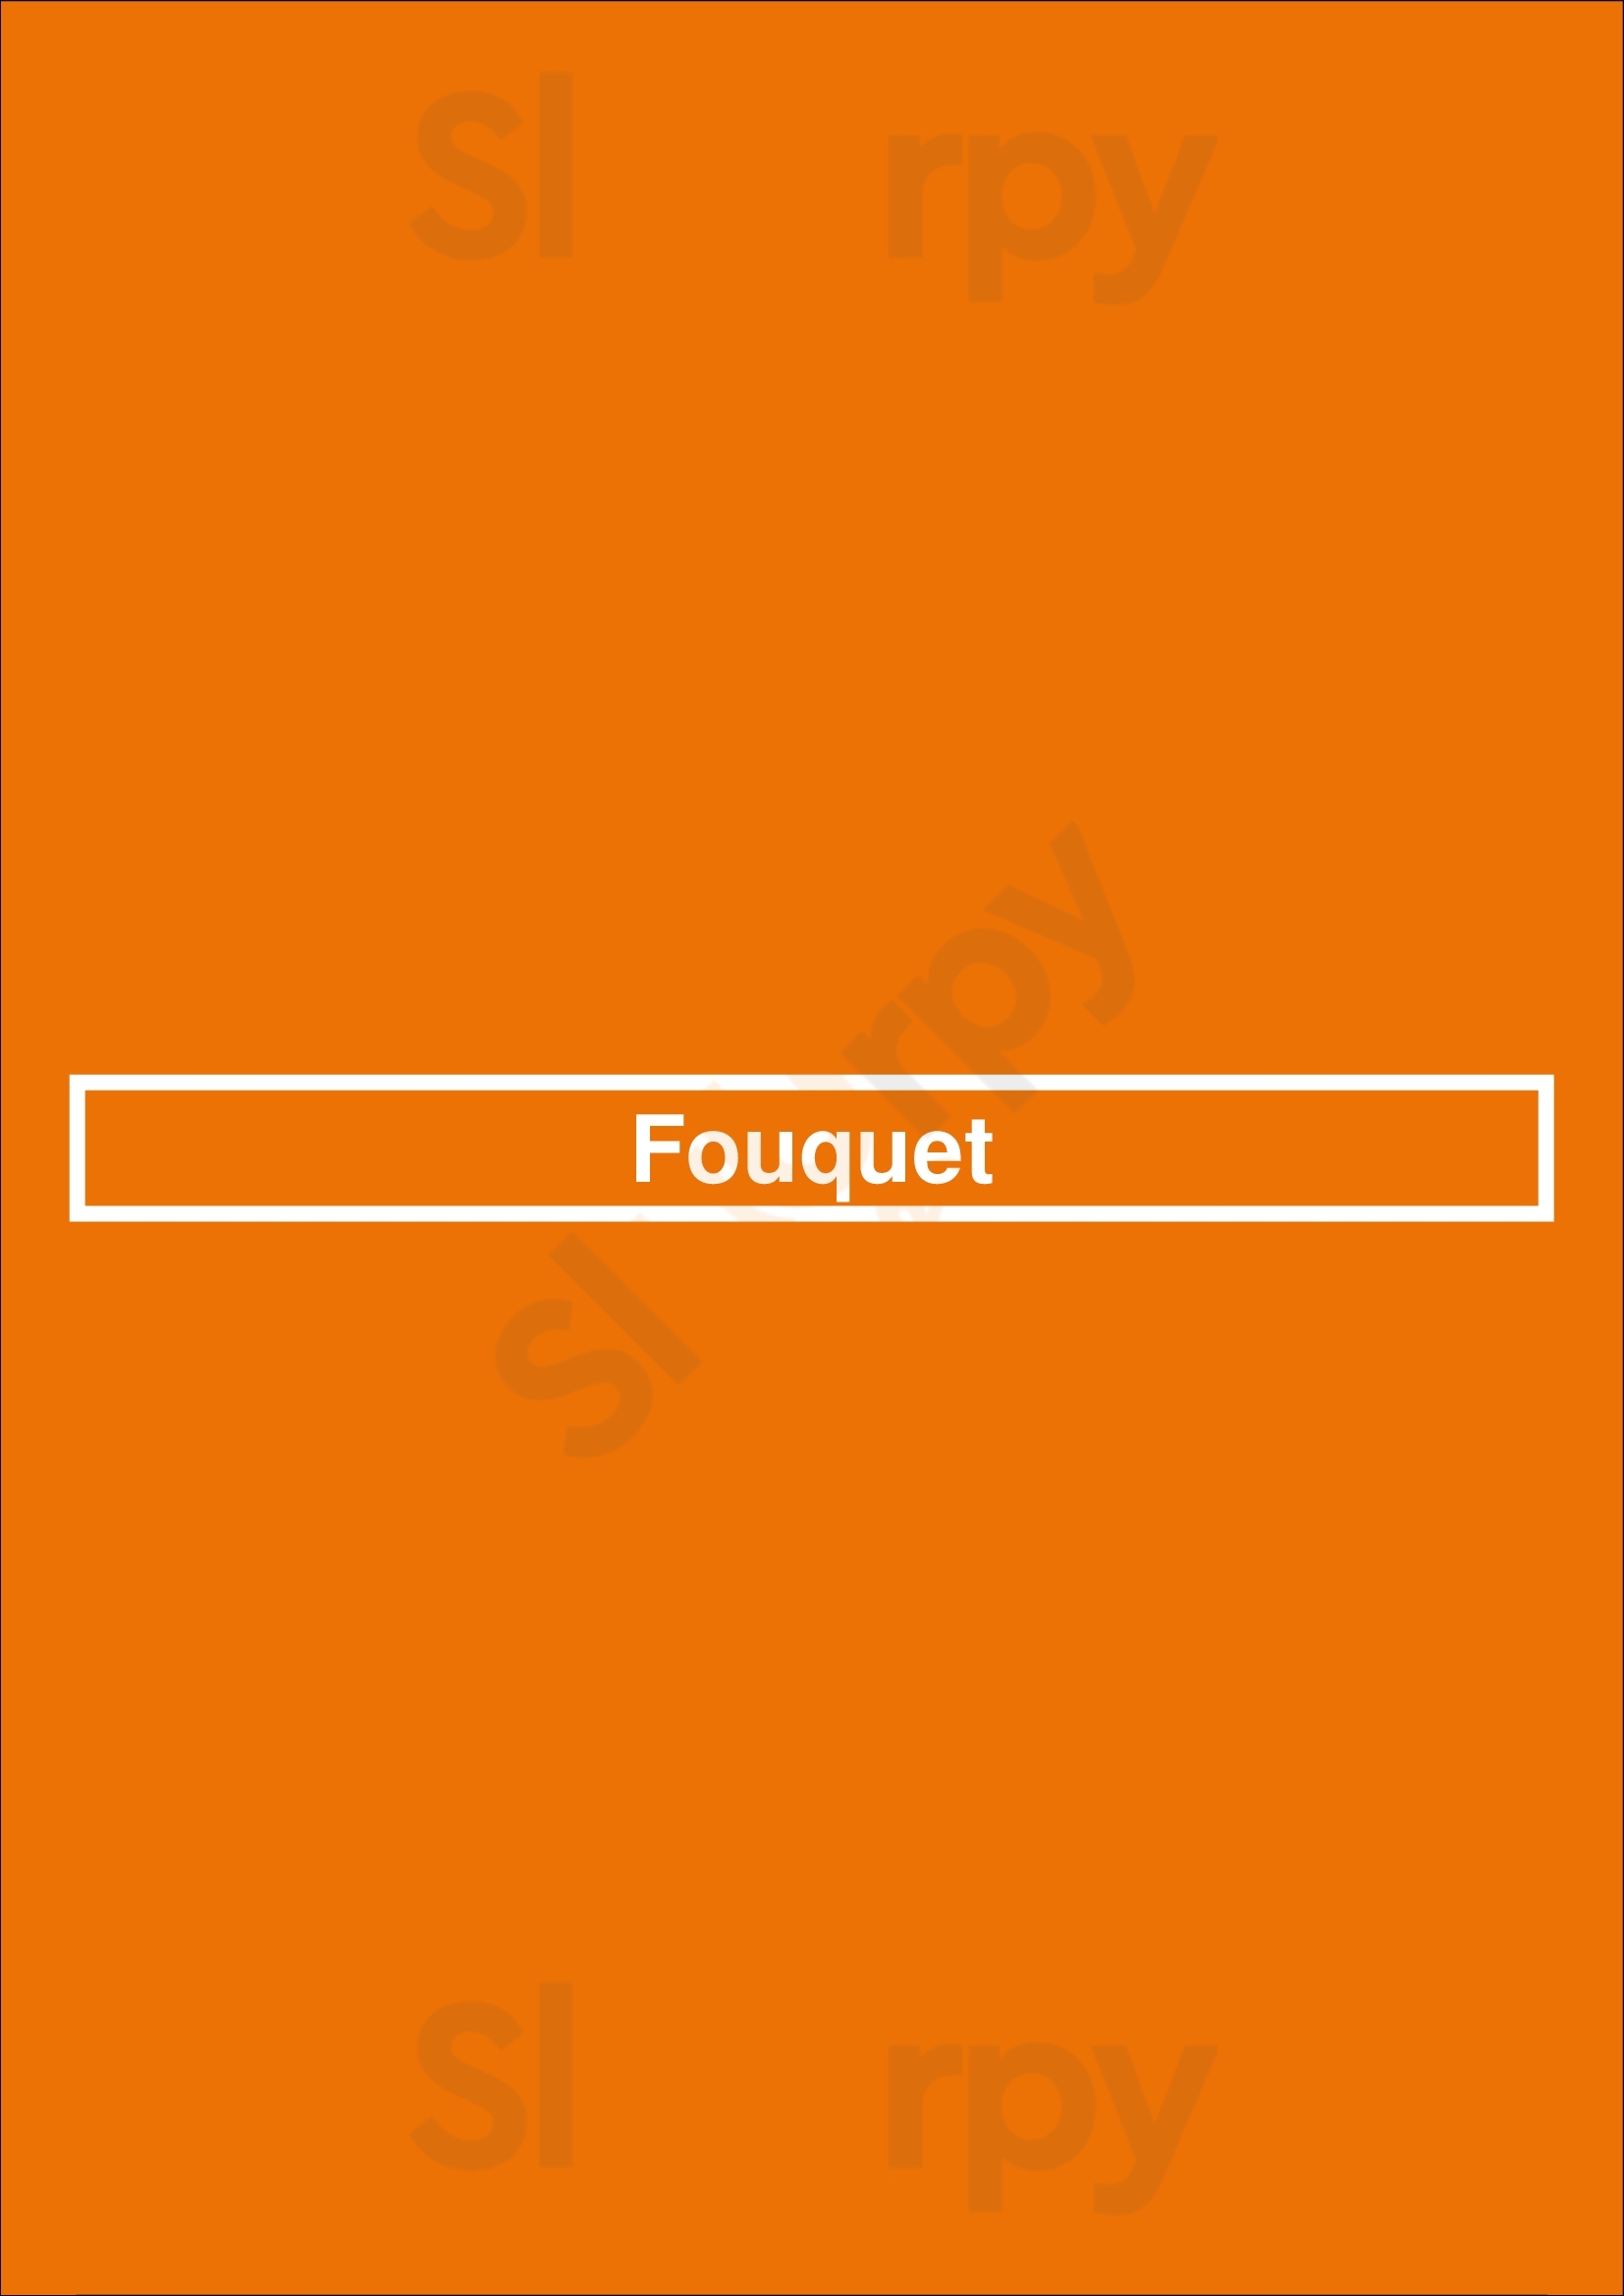 Fouquet Den Haag Menu - 1